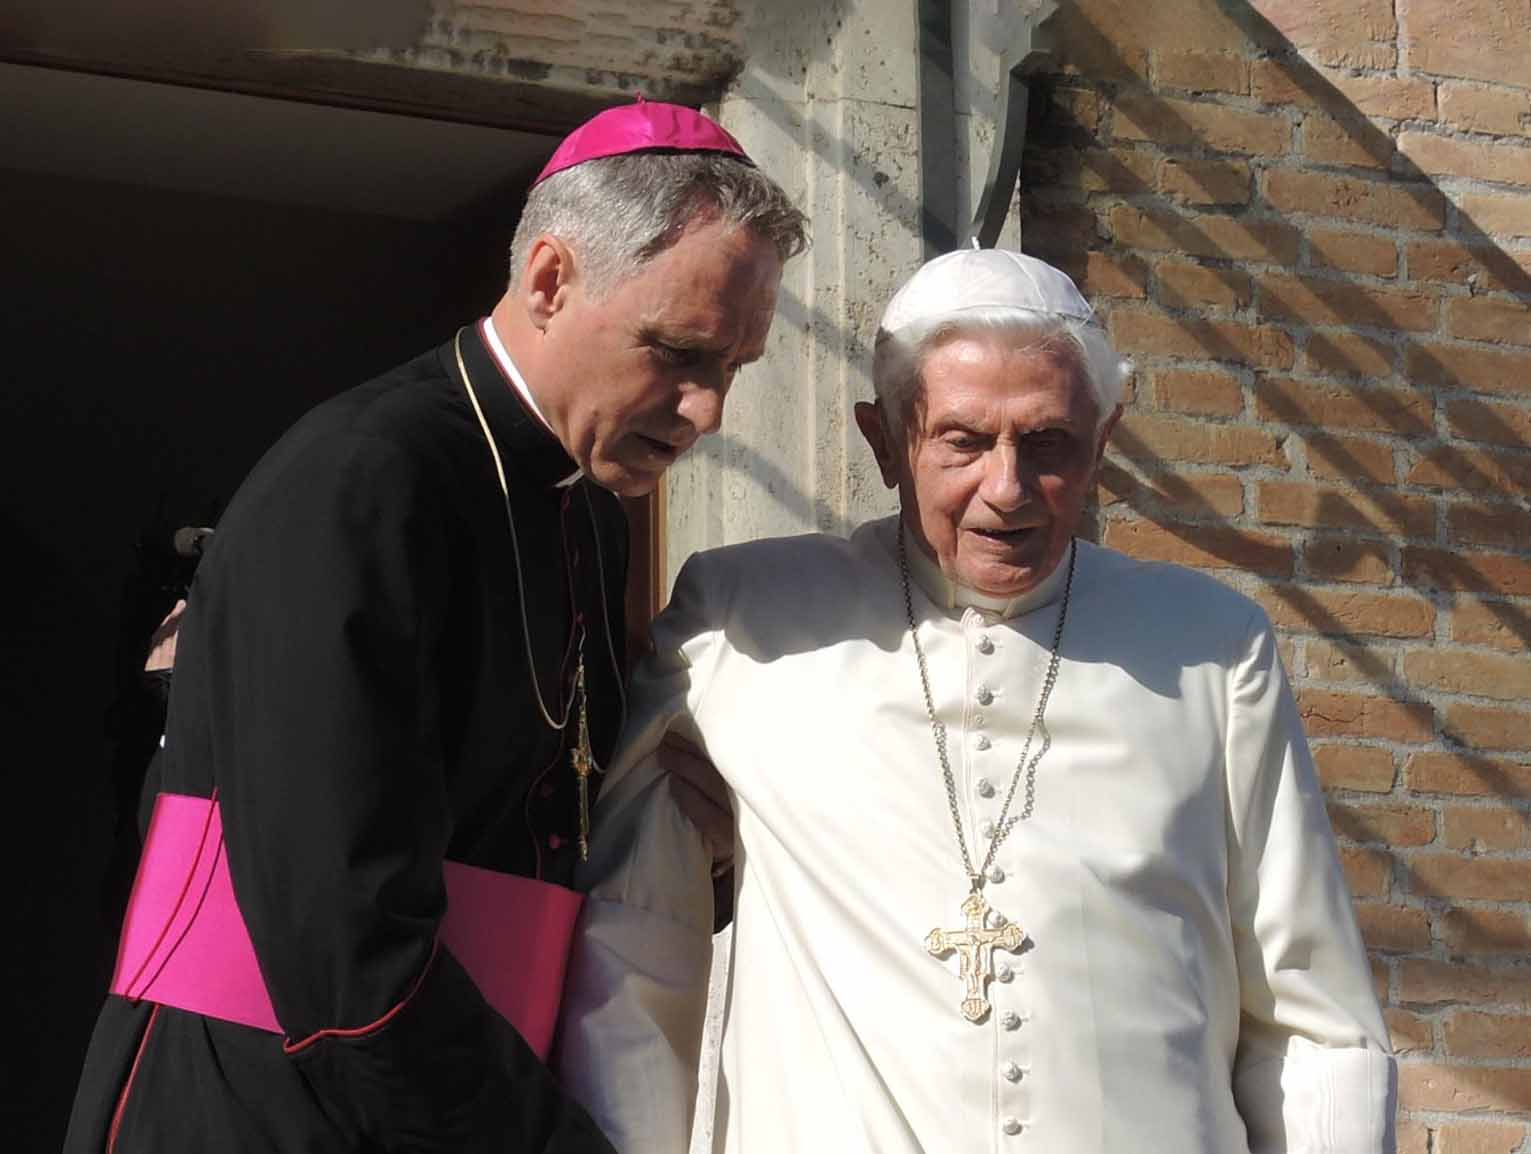 Czego bał się Benedykt XVI? Abp Ganswein ujawnia nowe fakty ws. abdykacji!